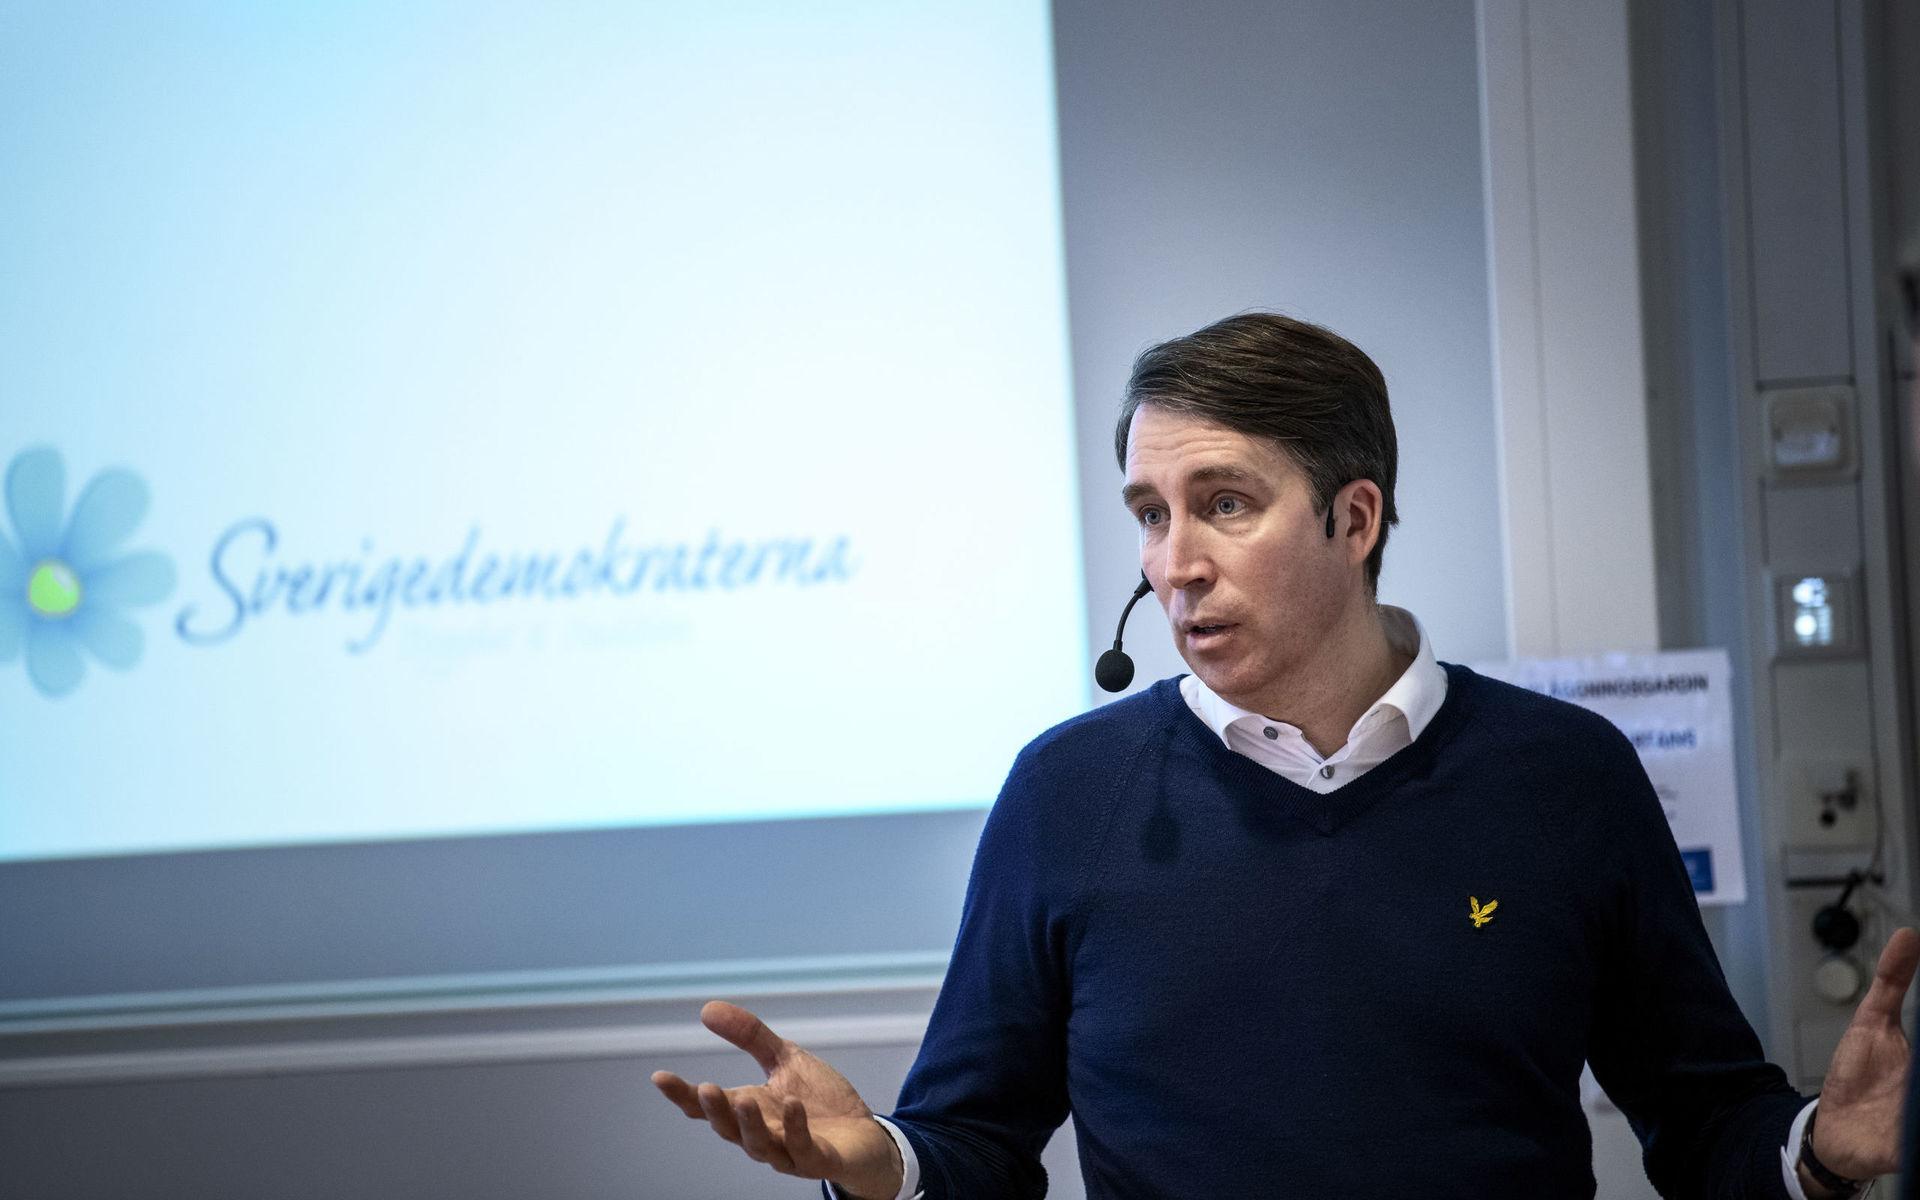 SD:s partisekreterare Richard Jomshof berättade om partiets strategier för att nå ut på Göteborgs universitet.